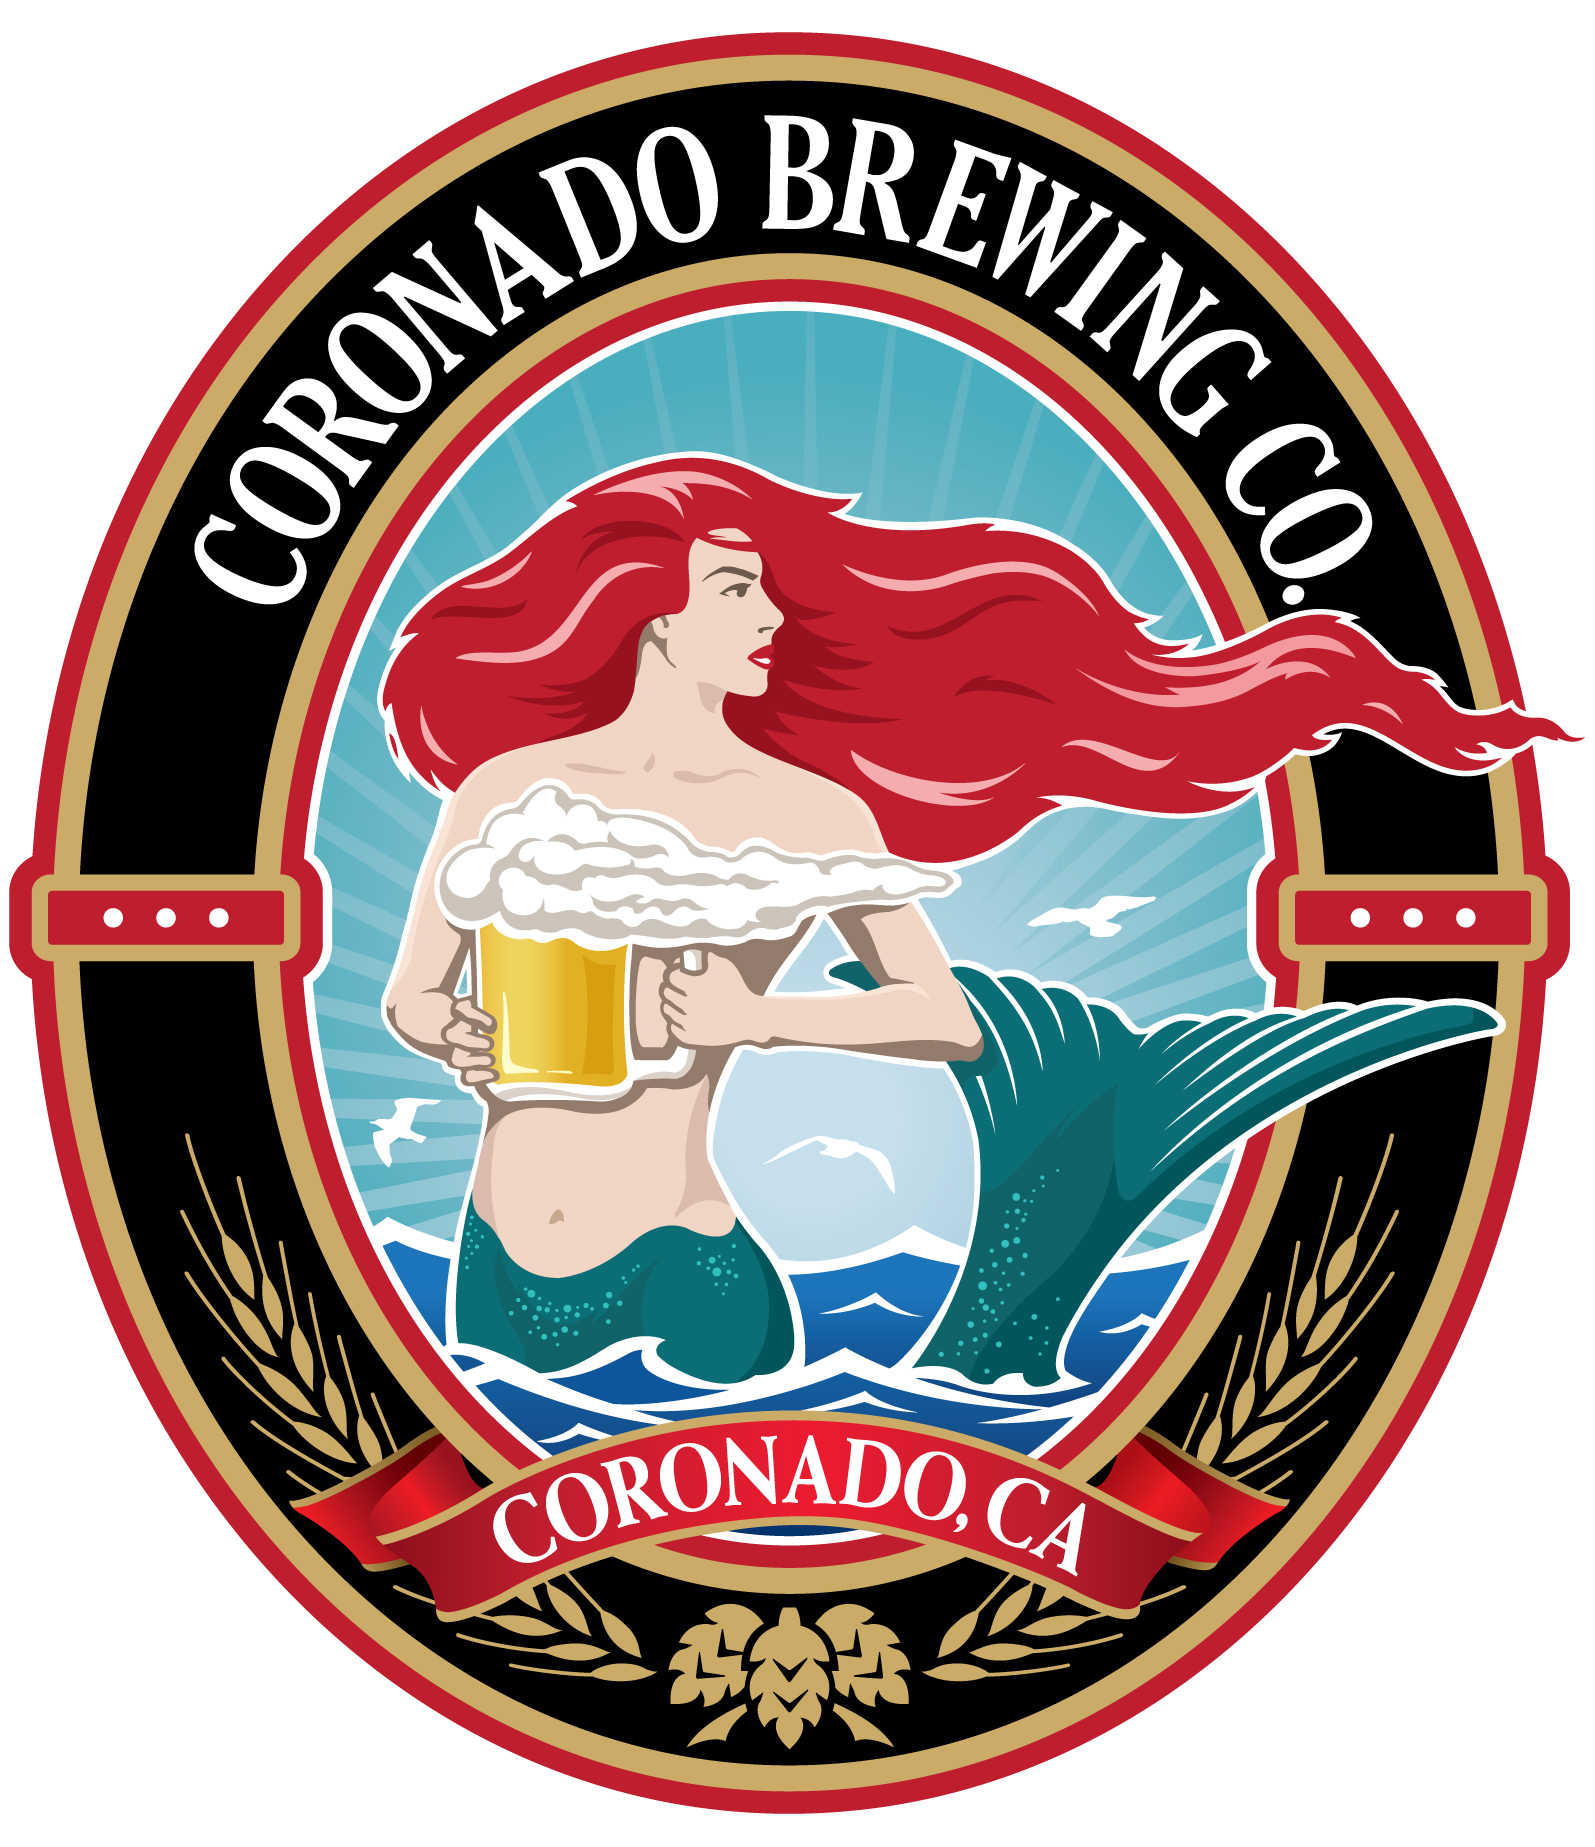 Coronado Brewing Company jobs